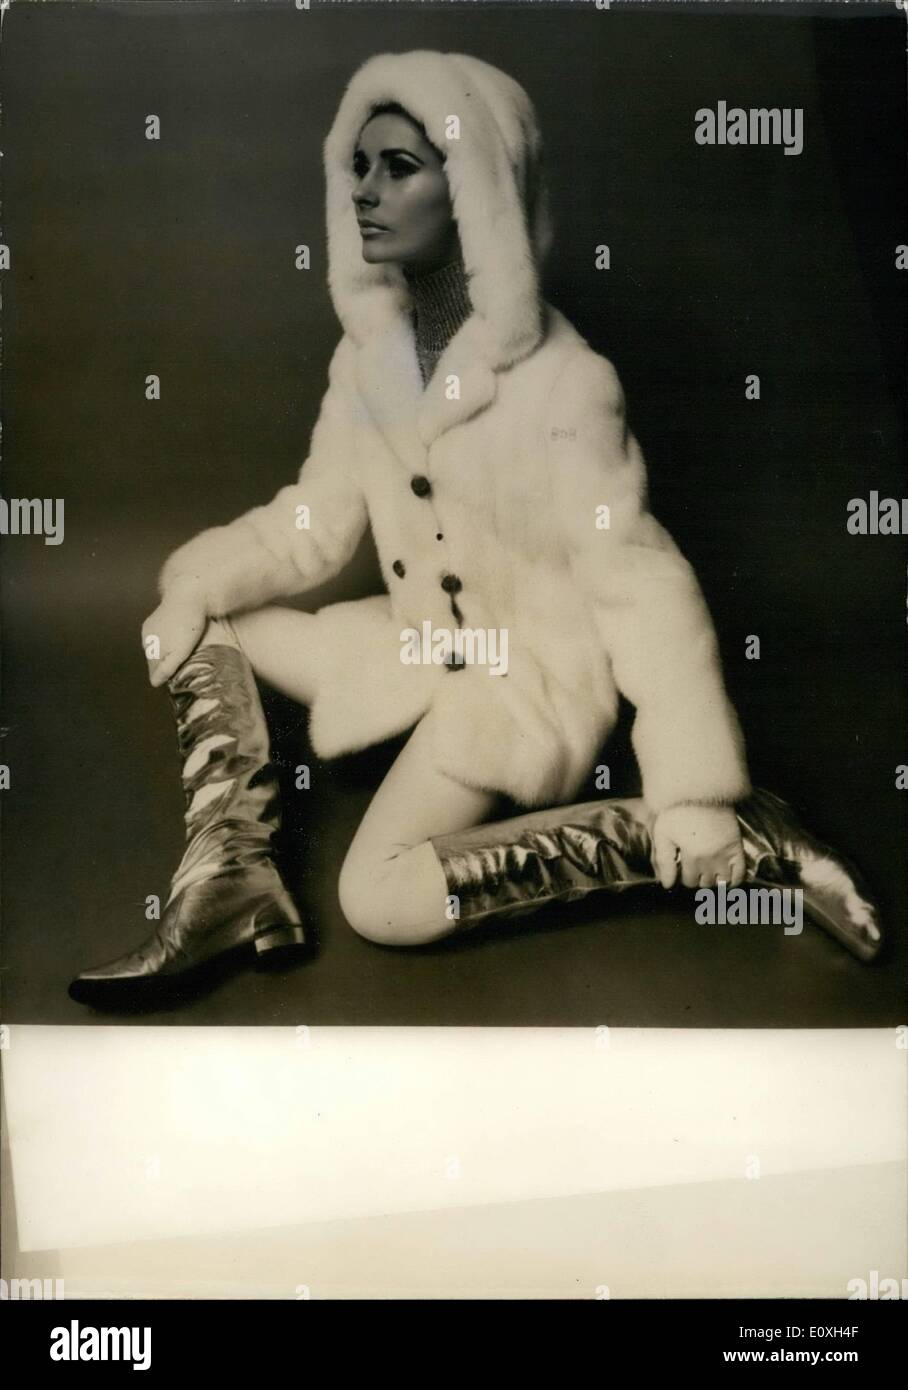 10 octobre 1966 - Paris de la mode. Photo montre la moitié de vison manteau avec capuche pour les sports d'hiver conçu par un fourreur Paris pour sa collection d'hiver. Banque D'Images